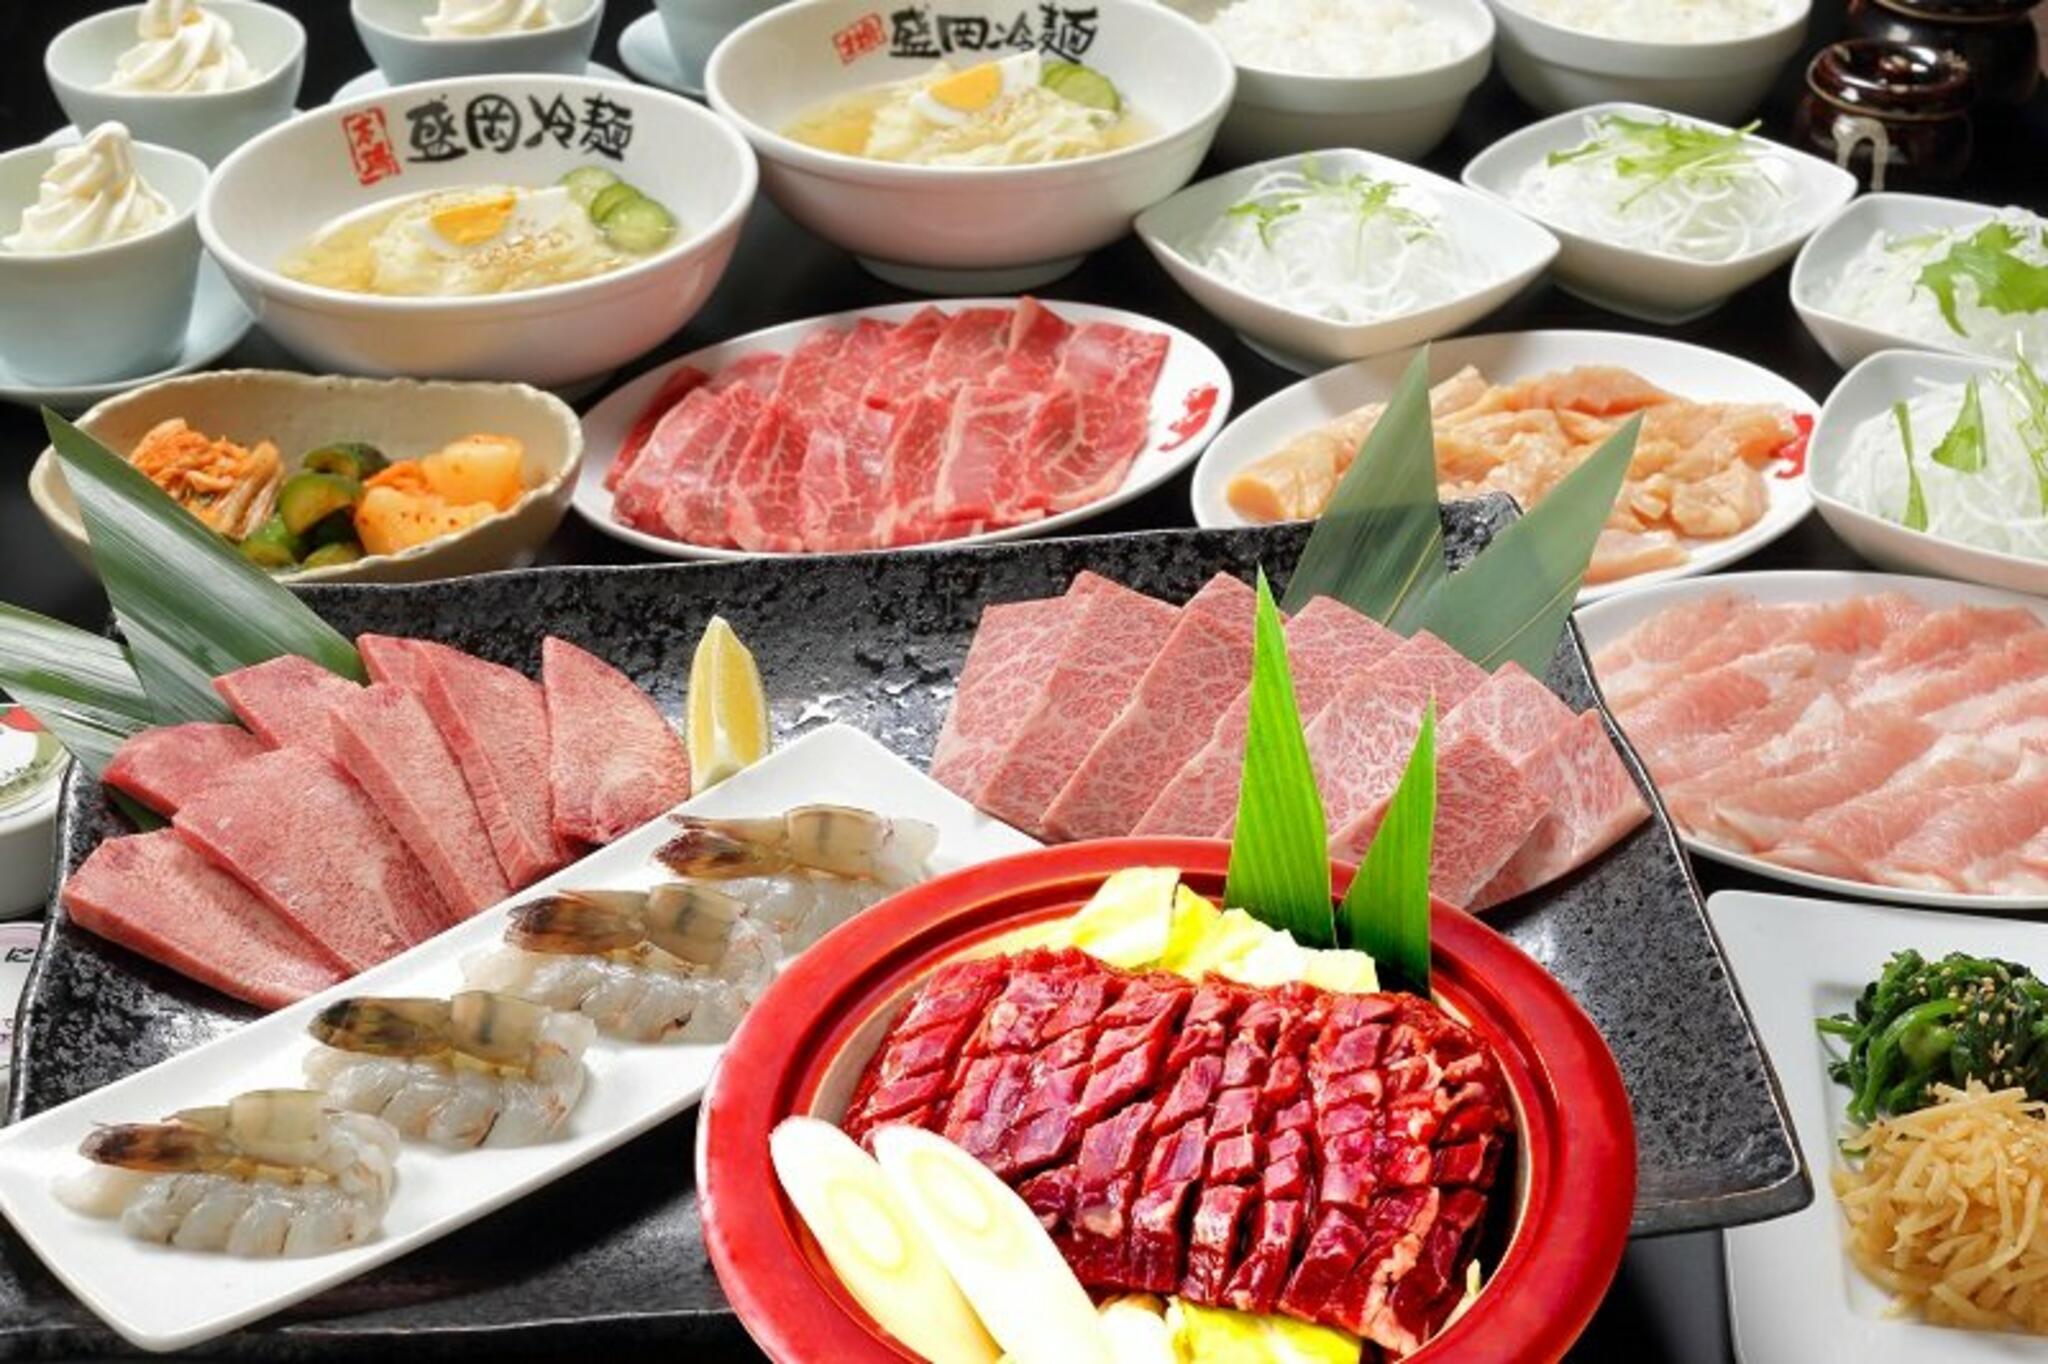 焼肉冷麺やまなか家 上田バイパス店からのお知らせ(歓送迎会に【コース料理】4名様よりご予約承ります)に関する写真